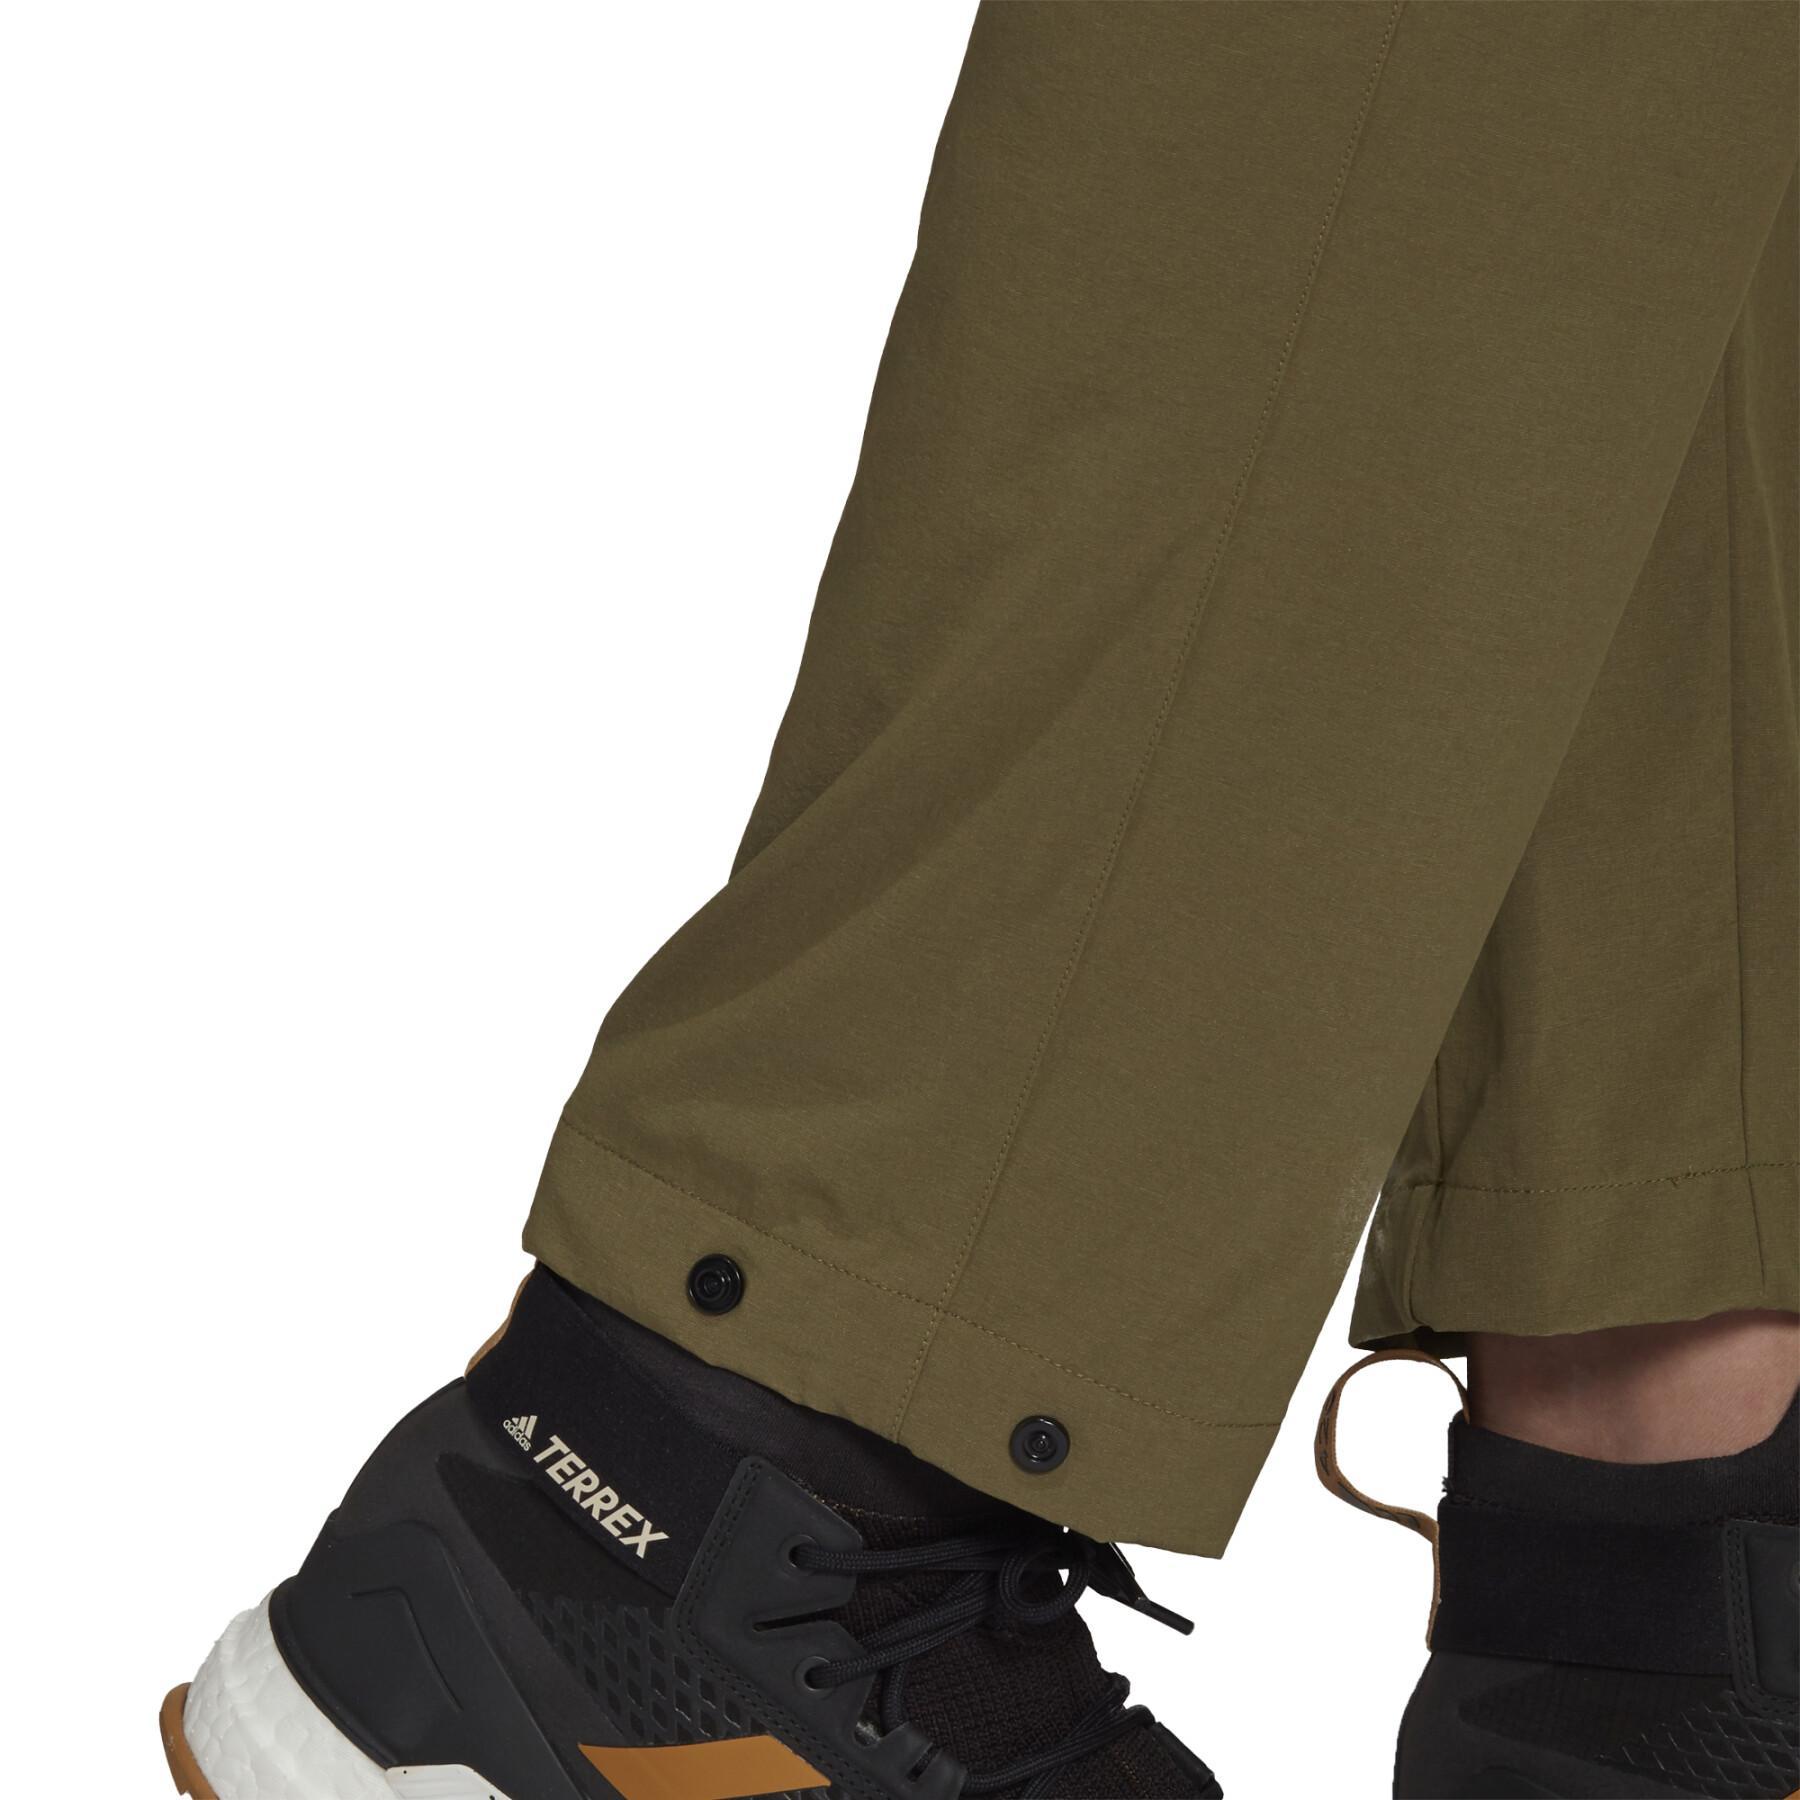 Spodnie adidas Terrex Liteflex Hiking